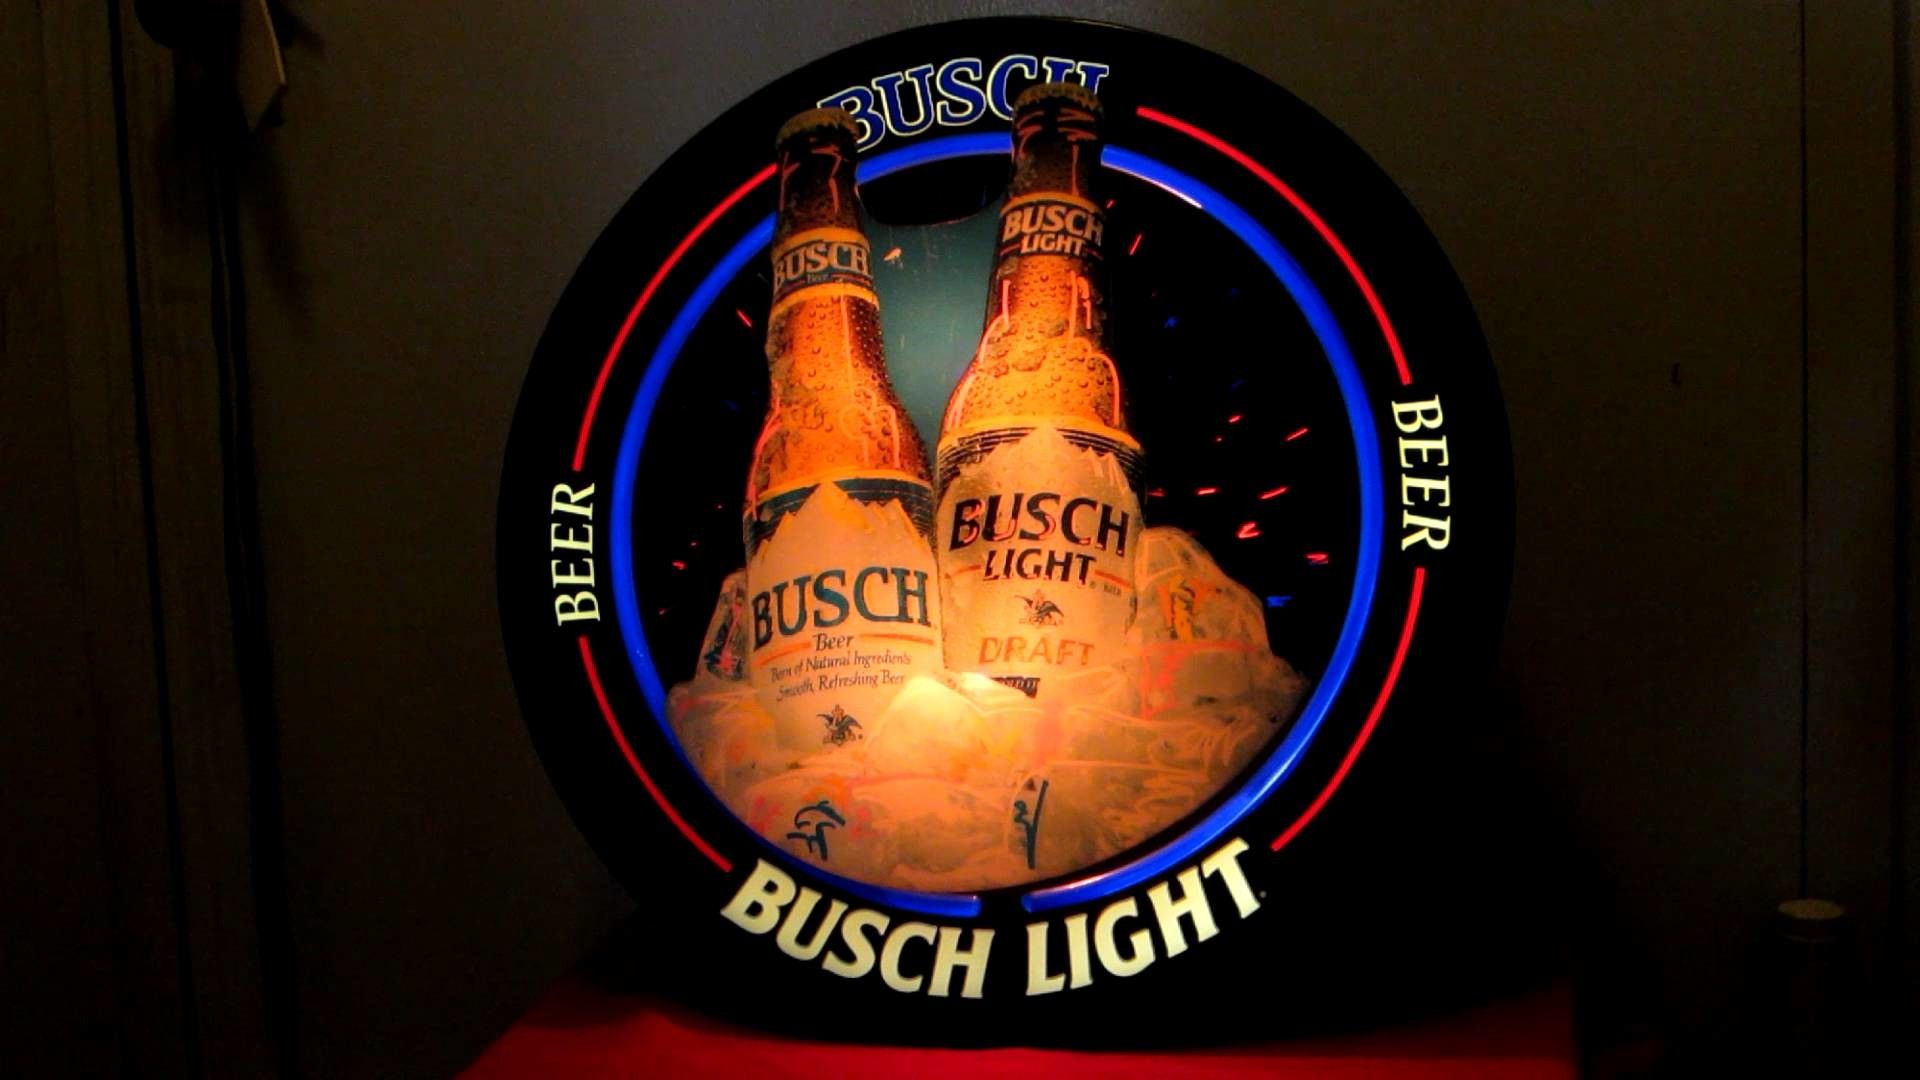 1920x1080, Vintage 1992 Busch Beer Busch Light Beer.